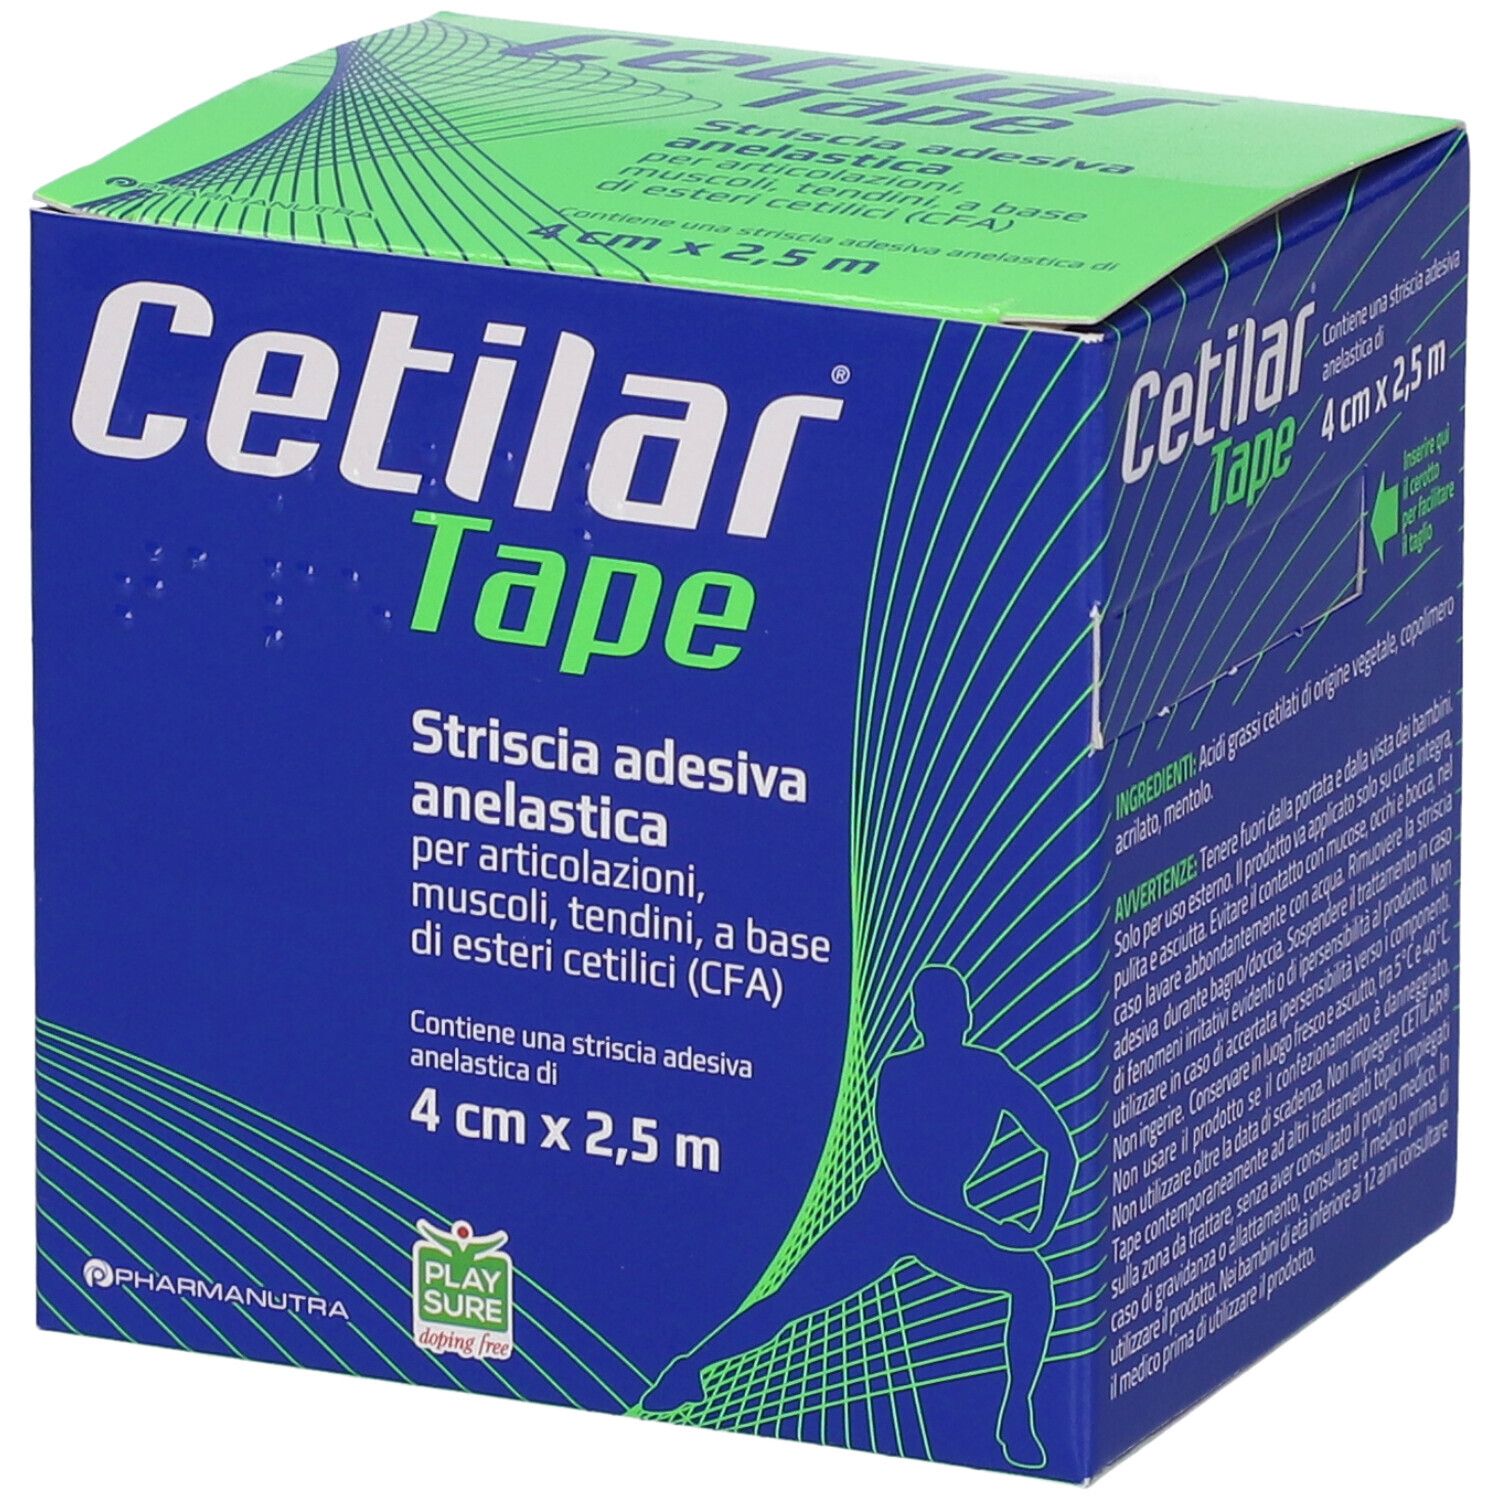 Cetilar® Tape